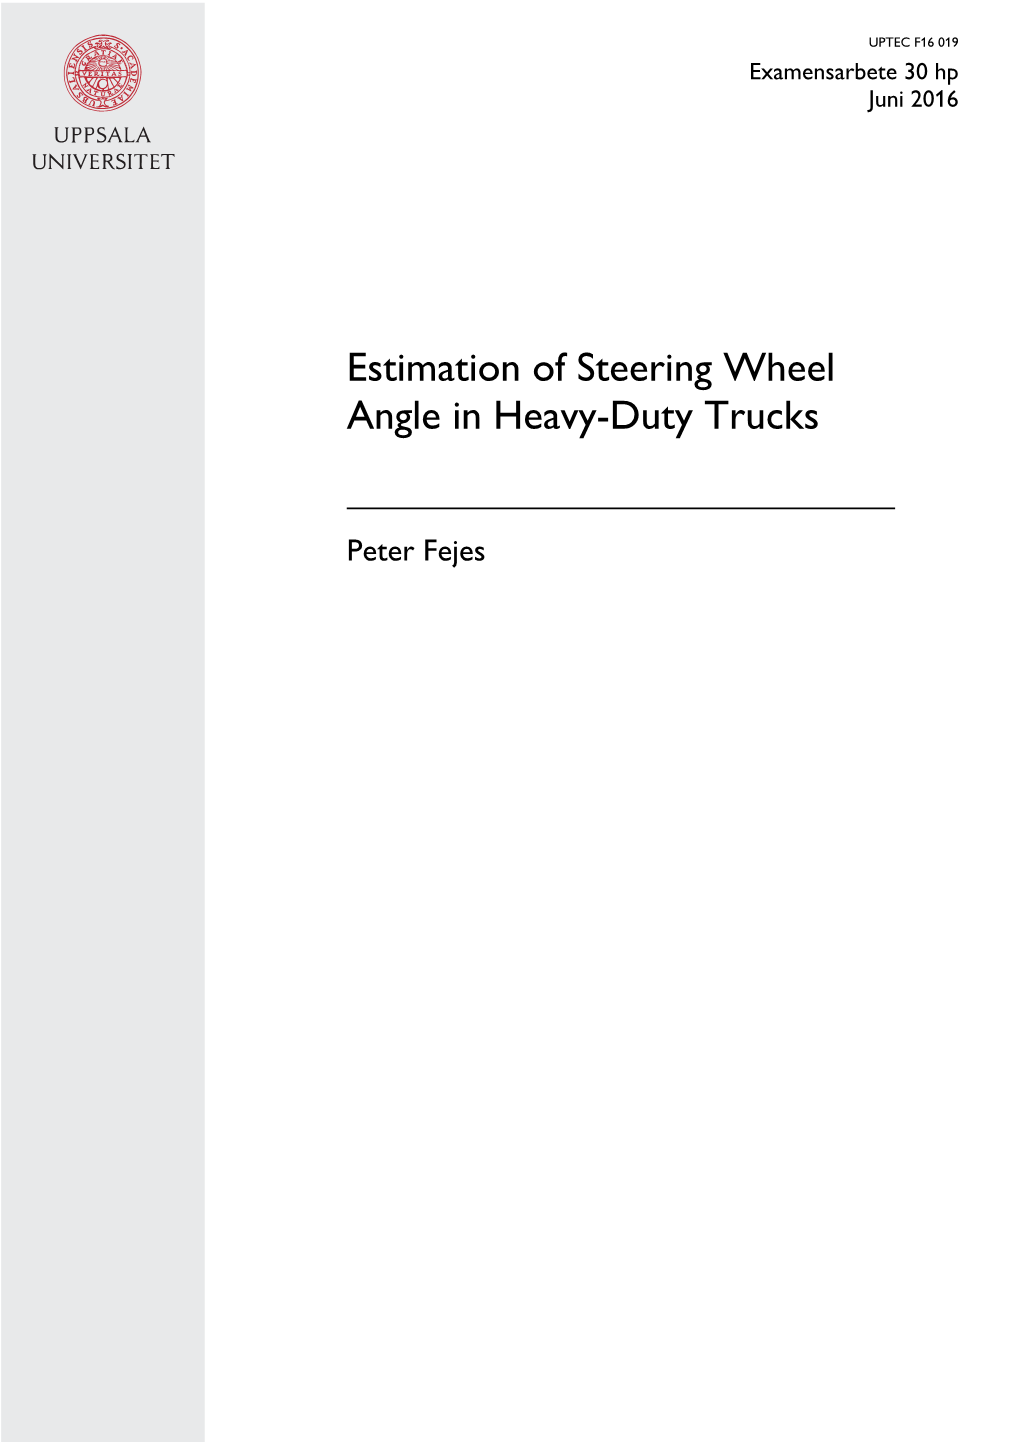 Estimation of Steering Wheel Angle in Heavy-Duty Trucks